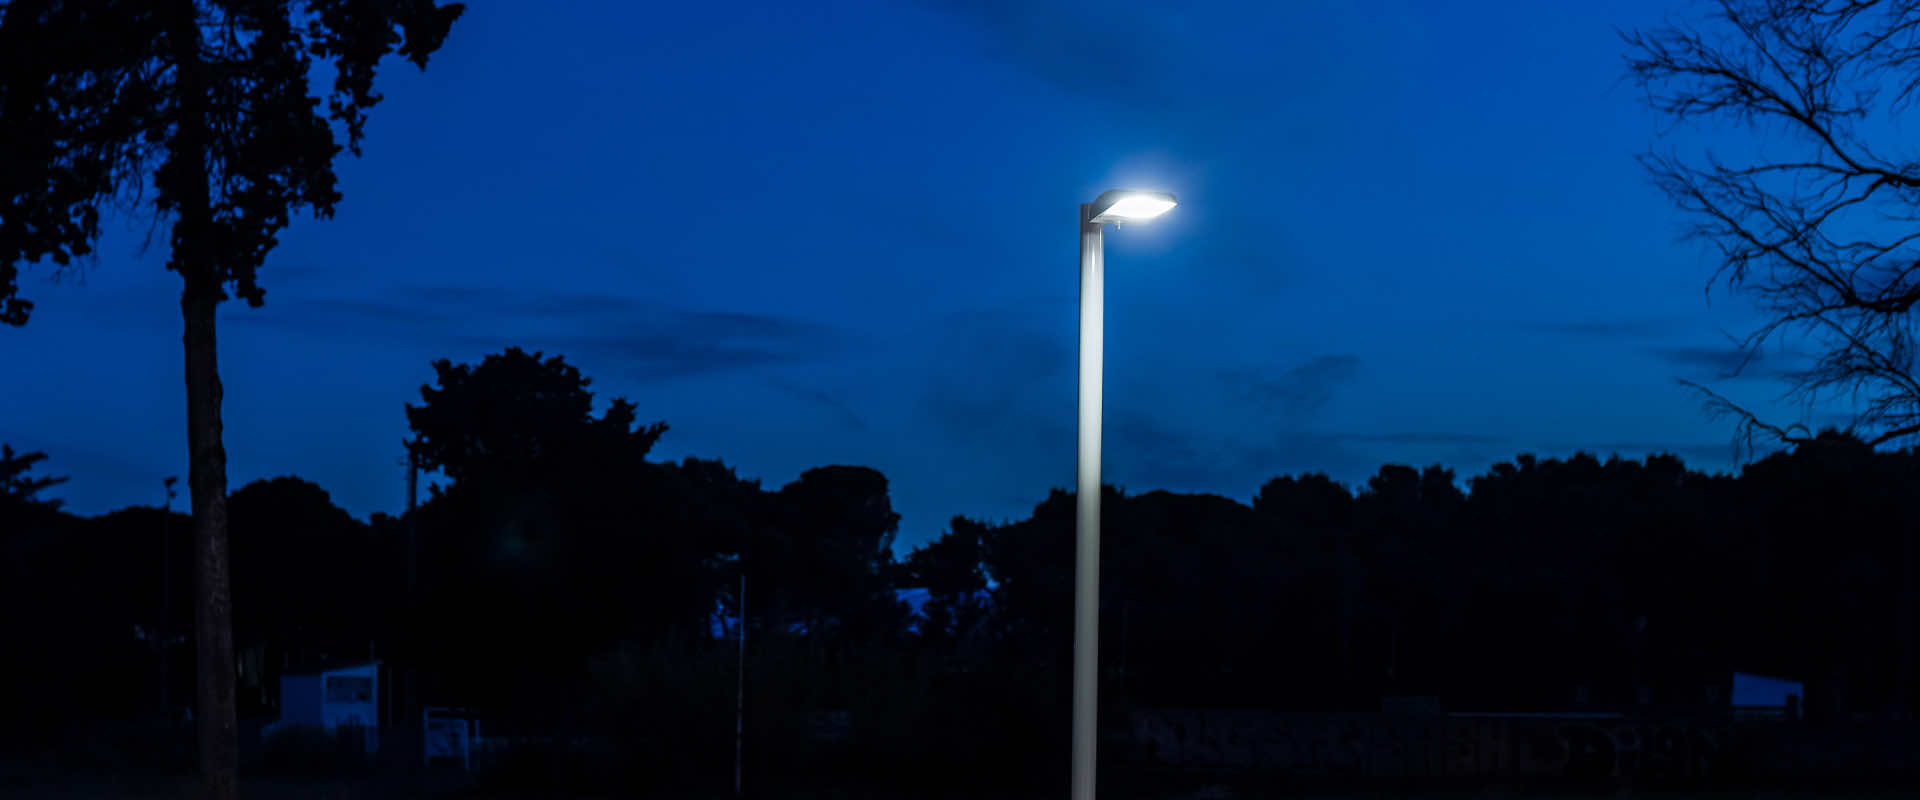 Arquiled Iluminação Pública LED - Projeto - Parque Urbano Outeiro da Vela - Carcavelos